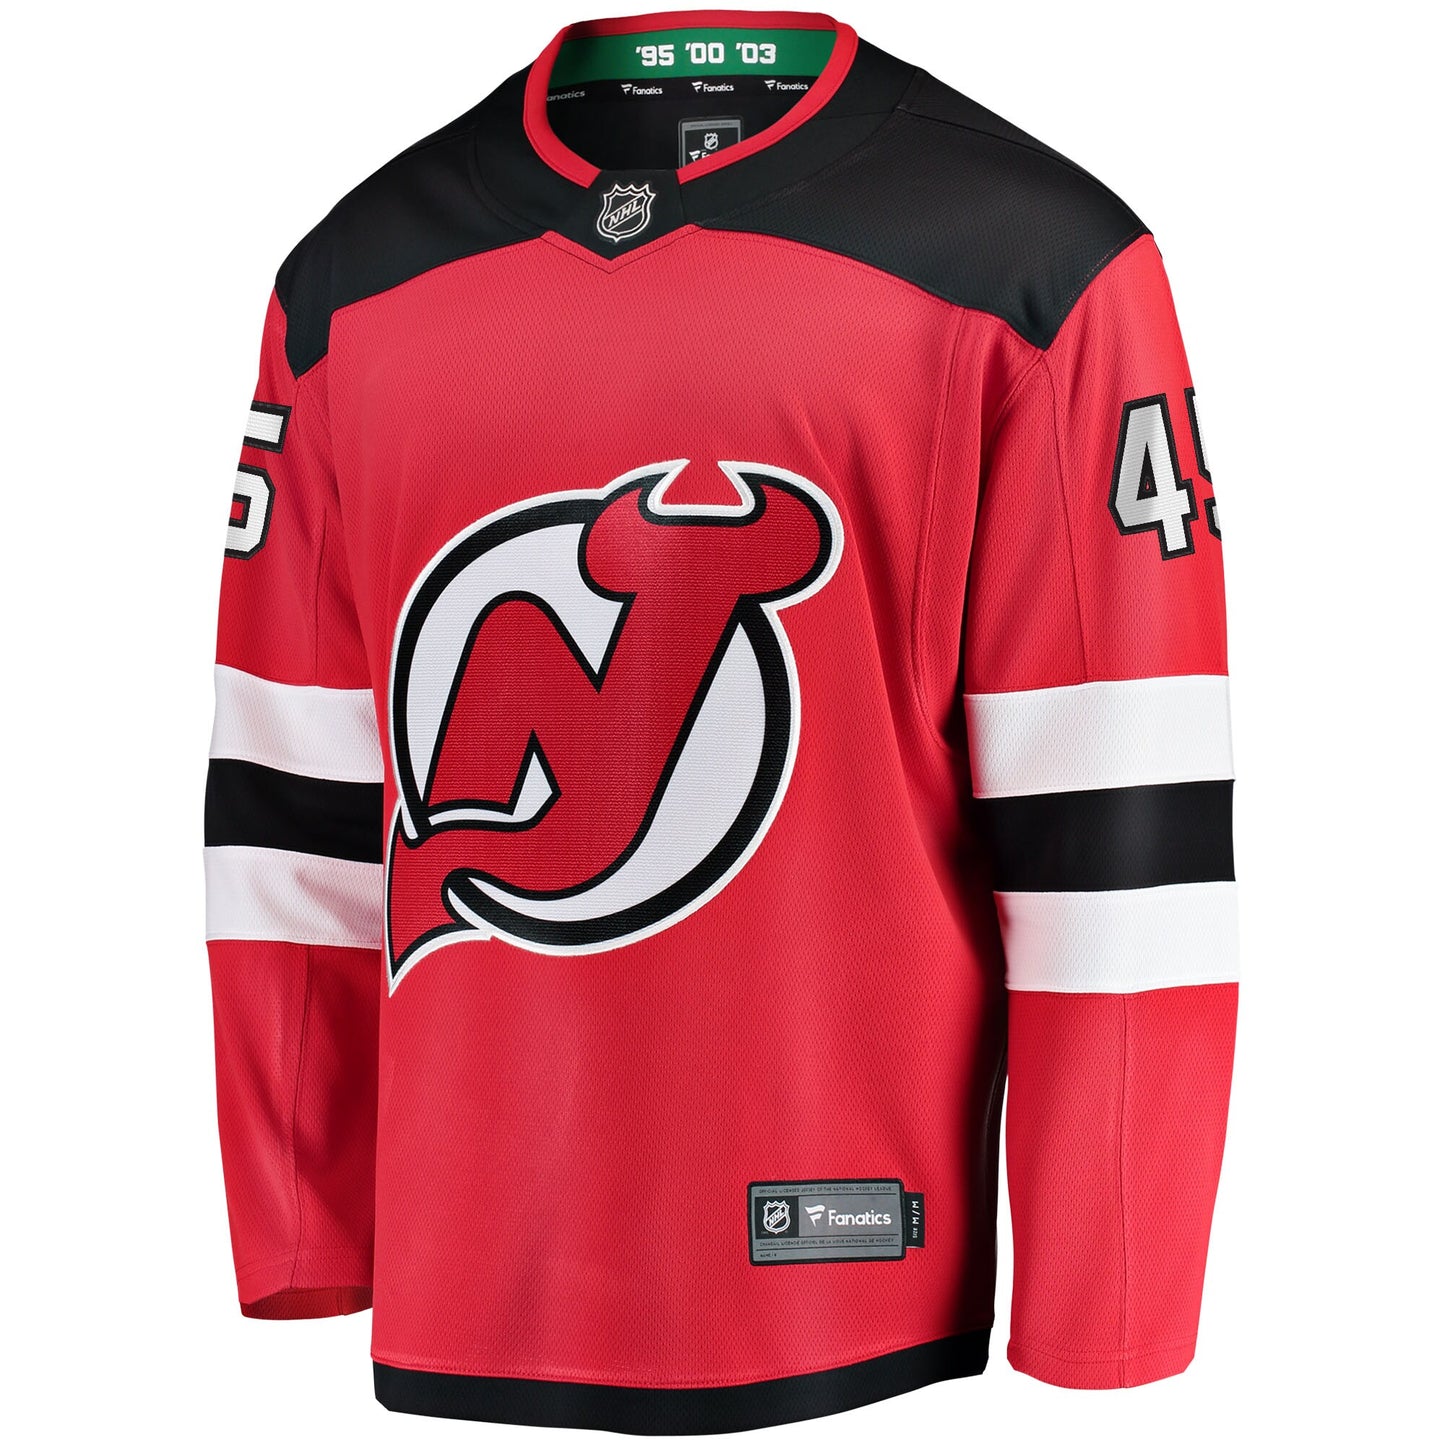 Jonathan Bernier New Jersey Devils Fanatics Branded Youth Breakaway Player Jersey - Red